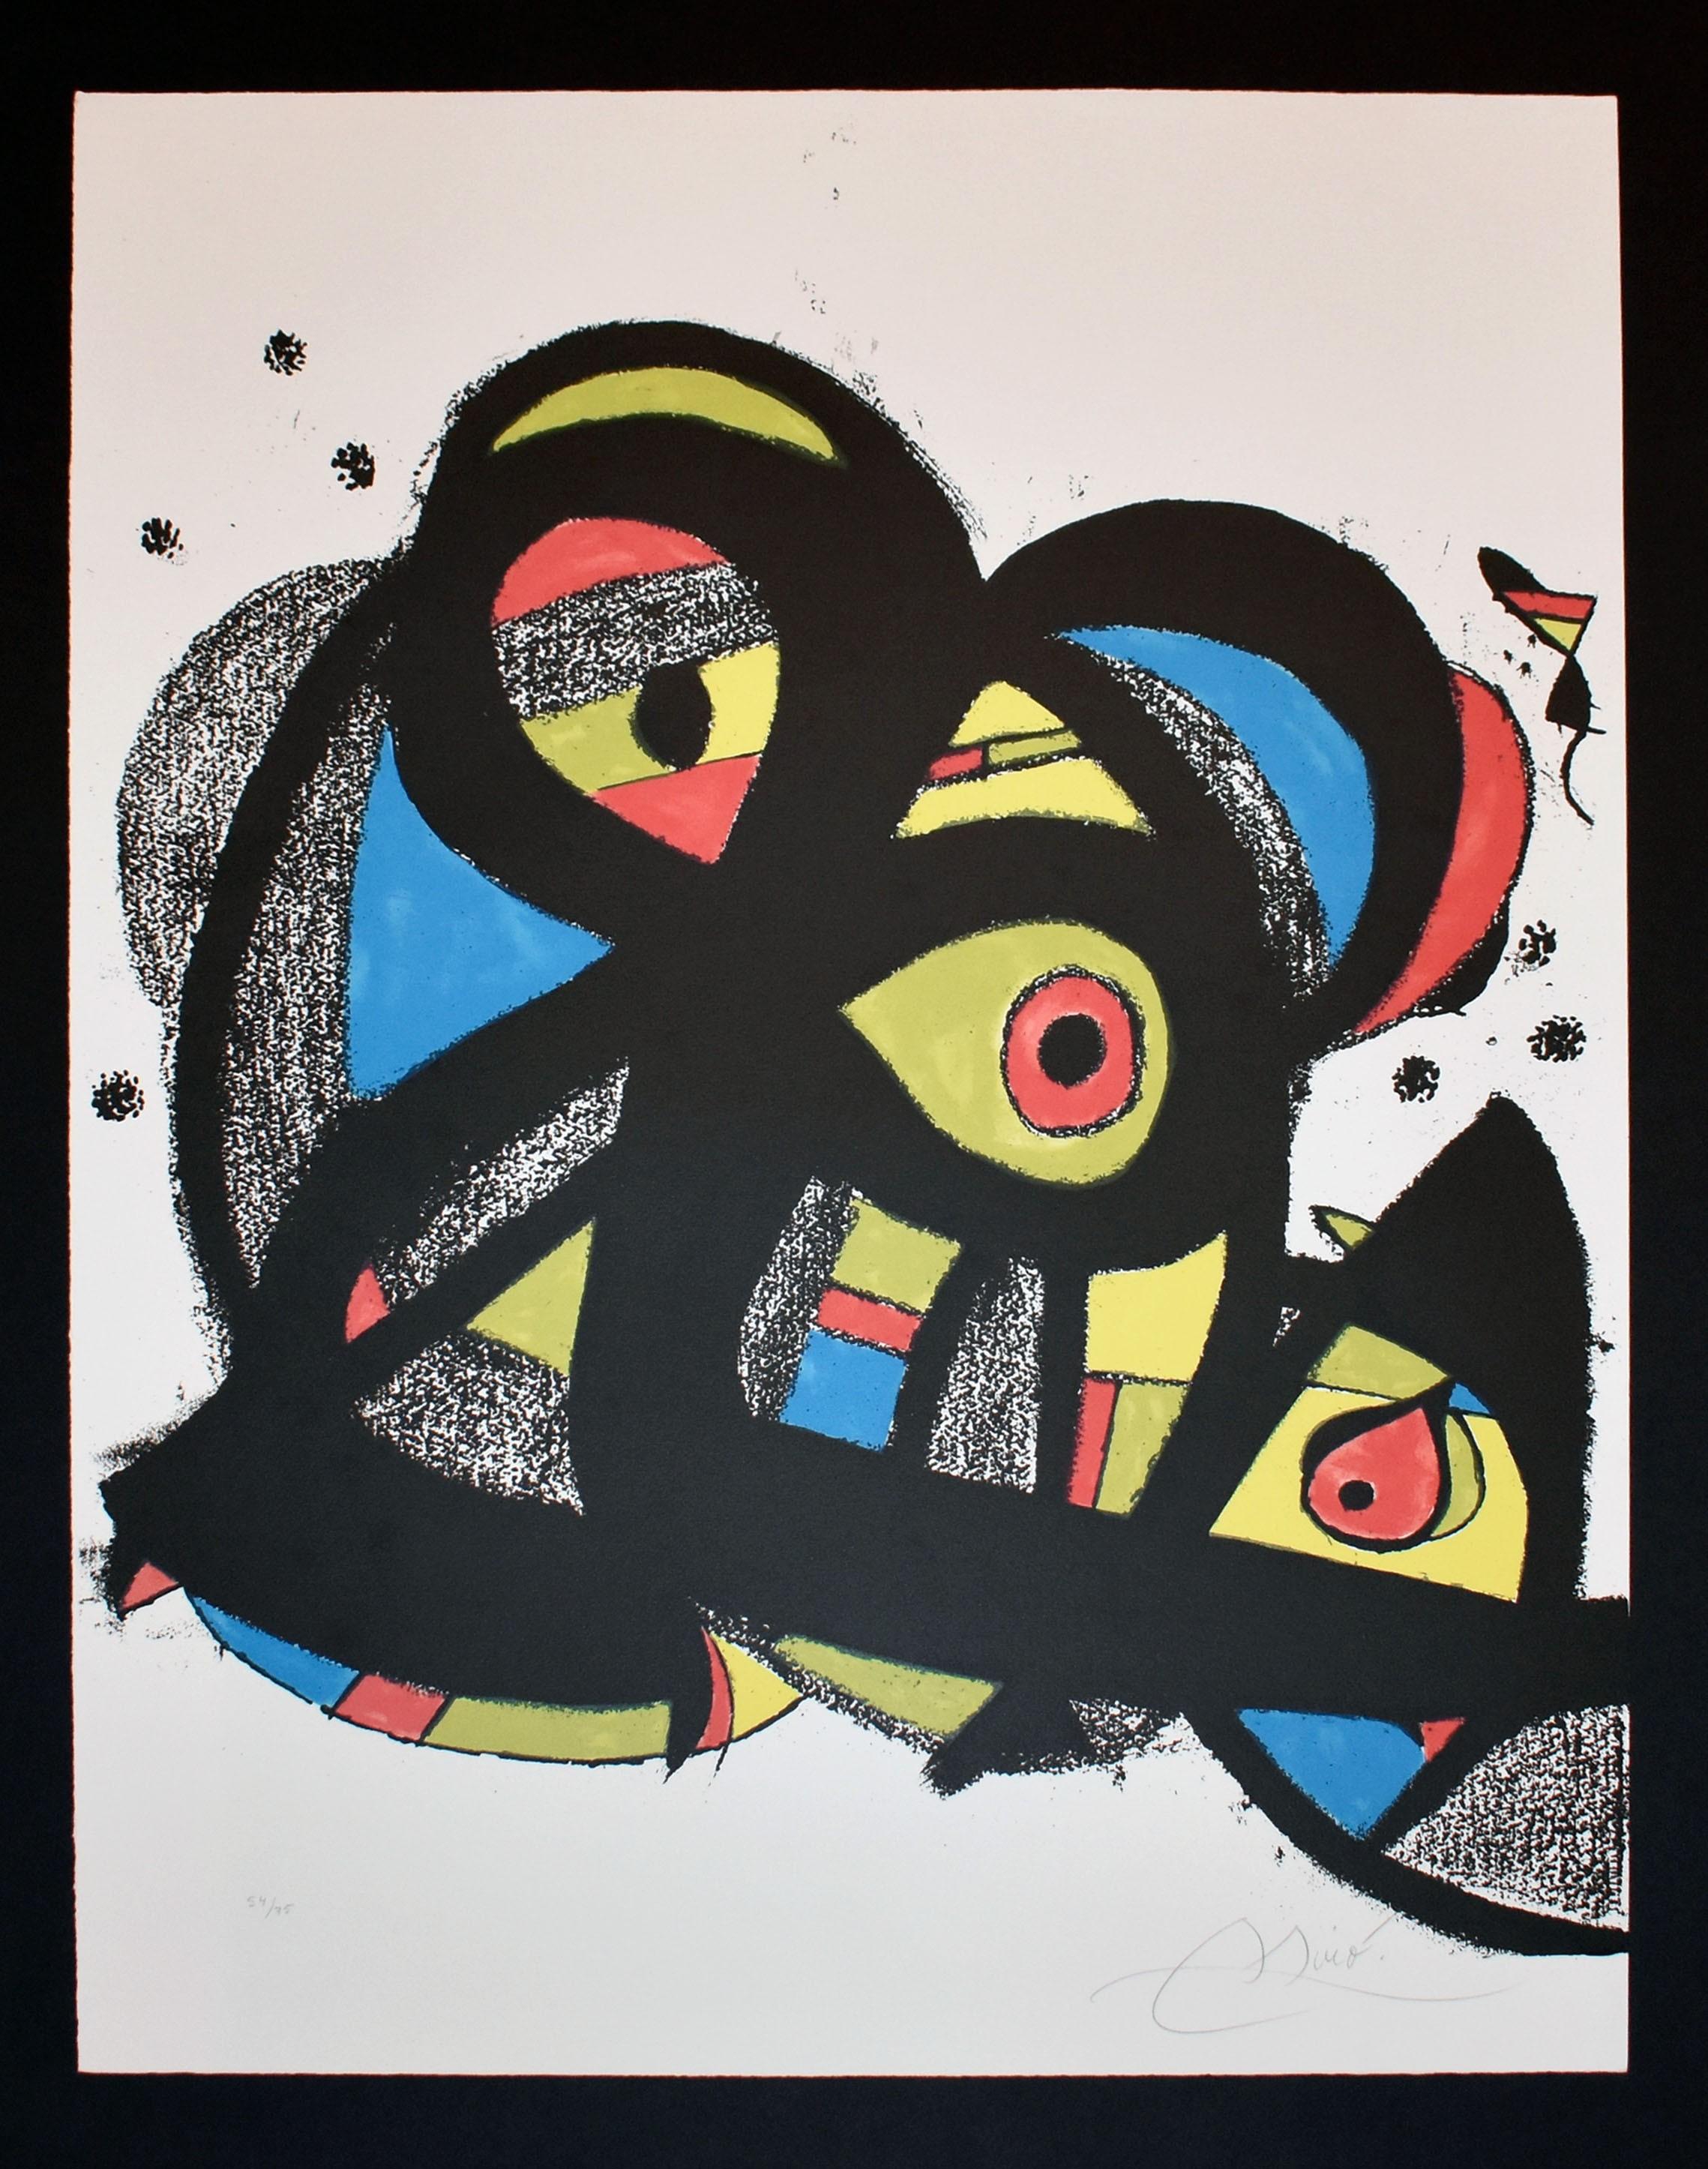 Escriptors en Llengua Catalana - Print by Joan Miró